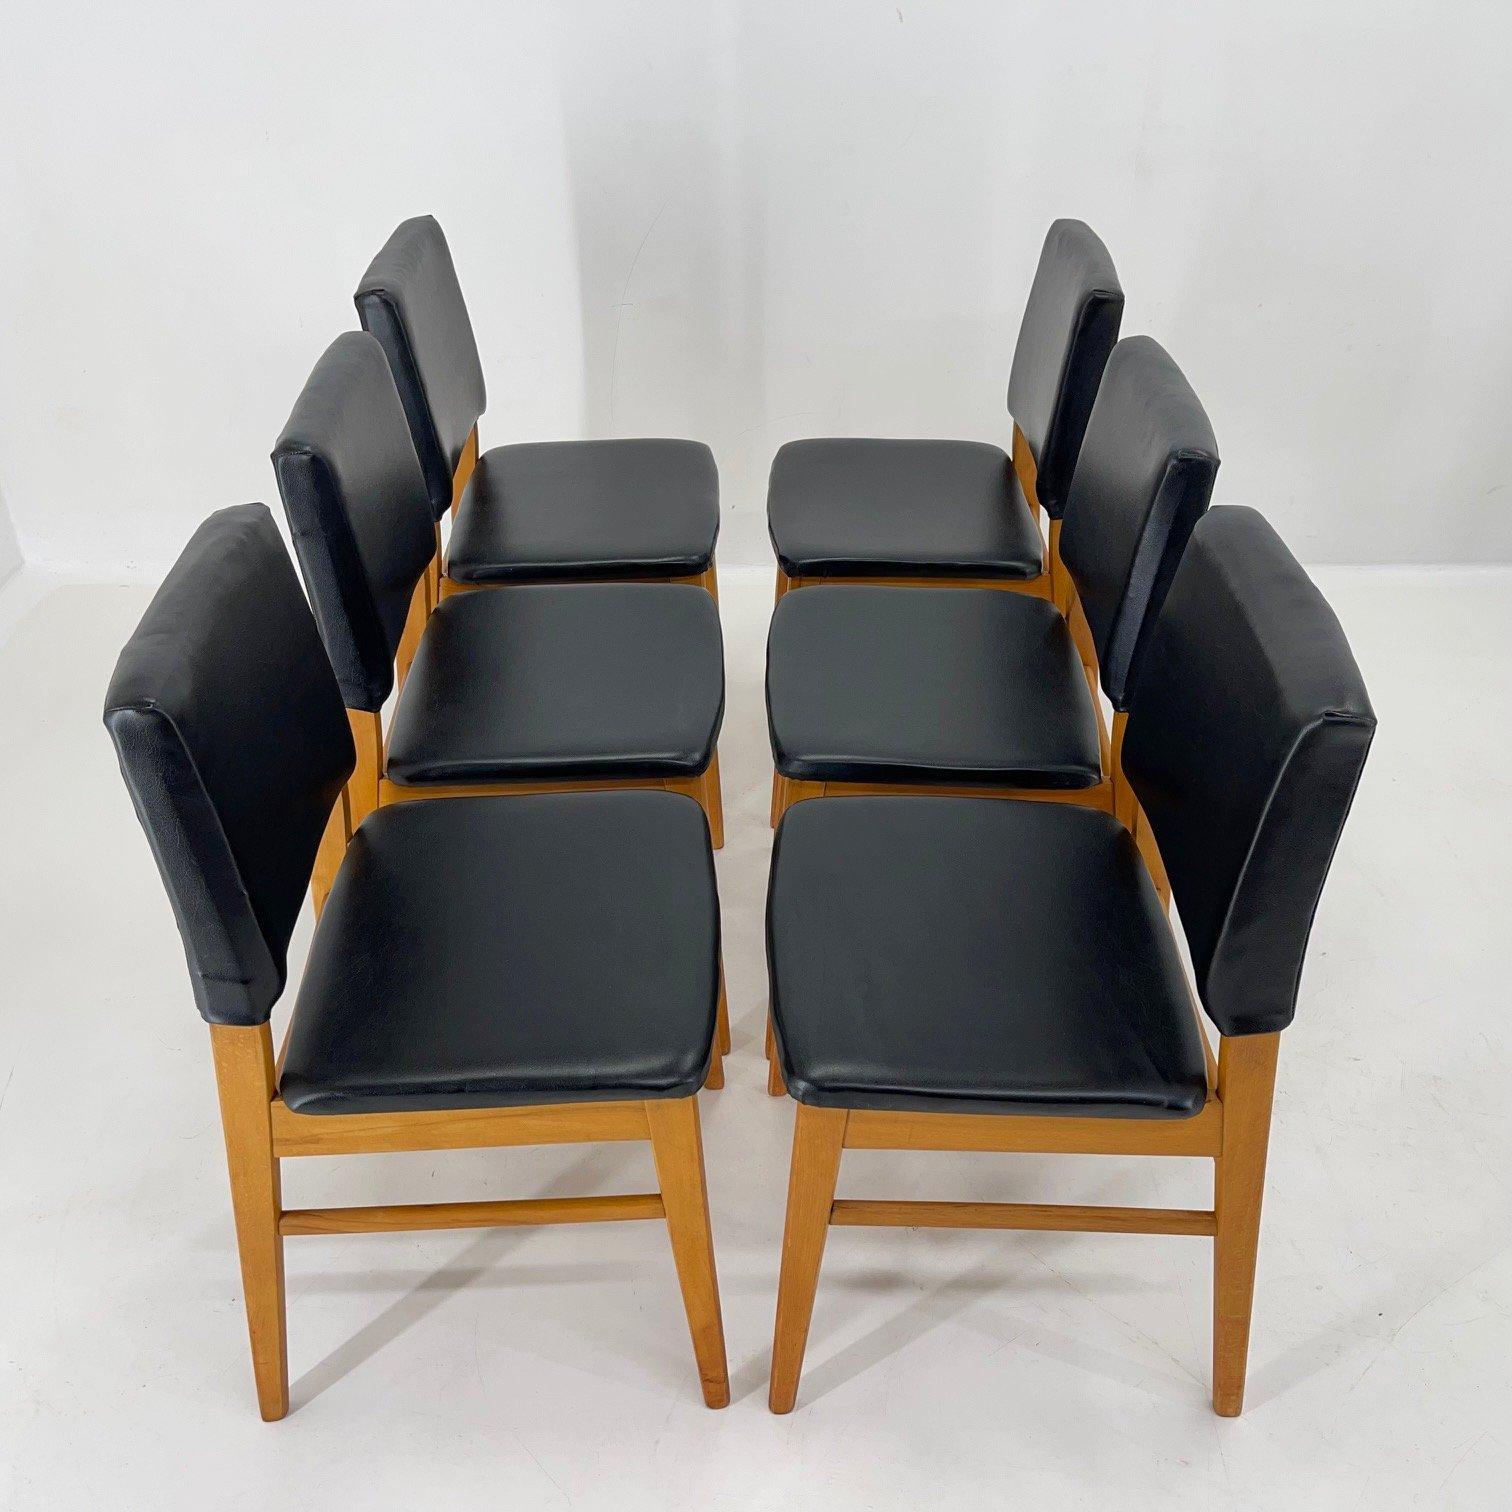 Satz von sechs Vintage-Stühlen aus Kunstleder und Holz, hergestellt in der Tschechoslowakei in den 1960er Jahren. Hölzerne Teile wurden aufgearbeitet.